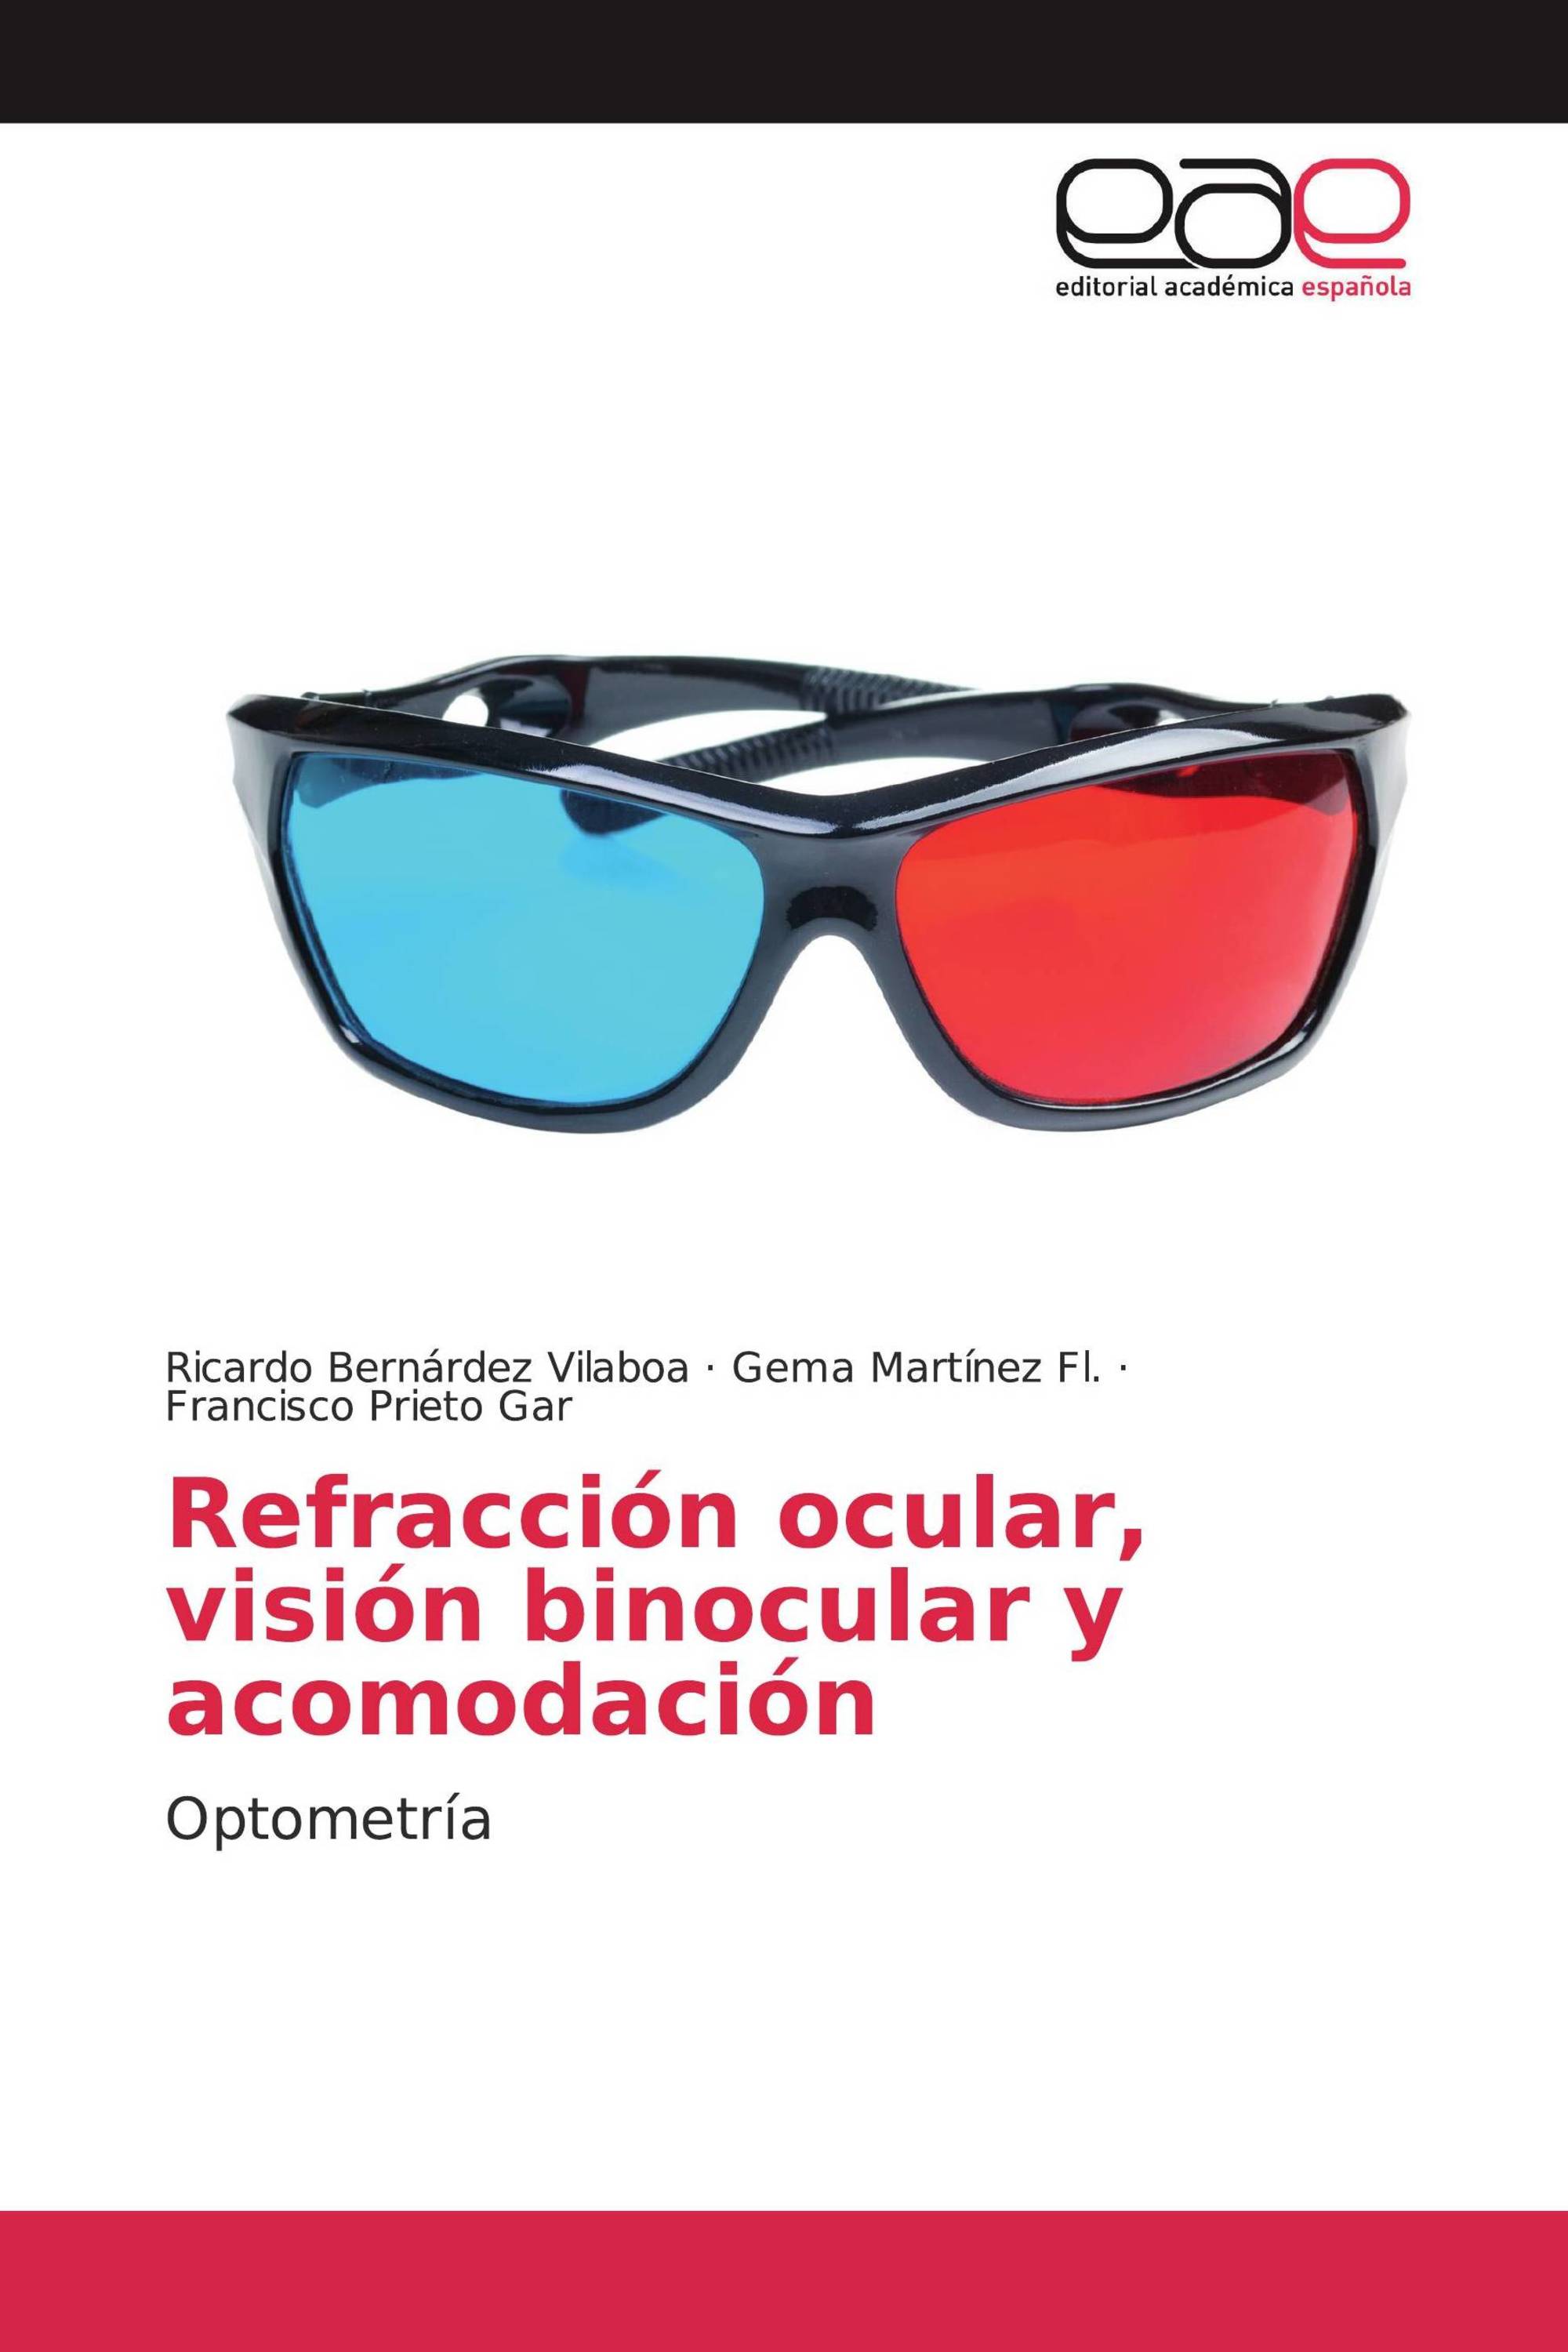 Refracción ocular, visión binocular y acomodación